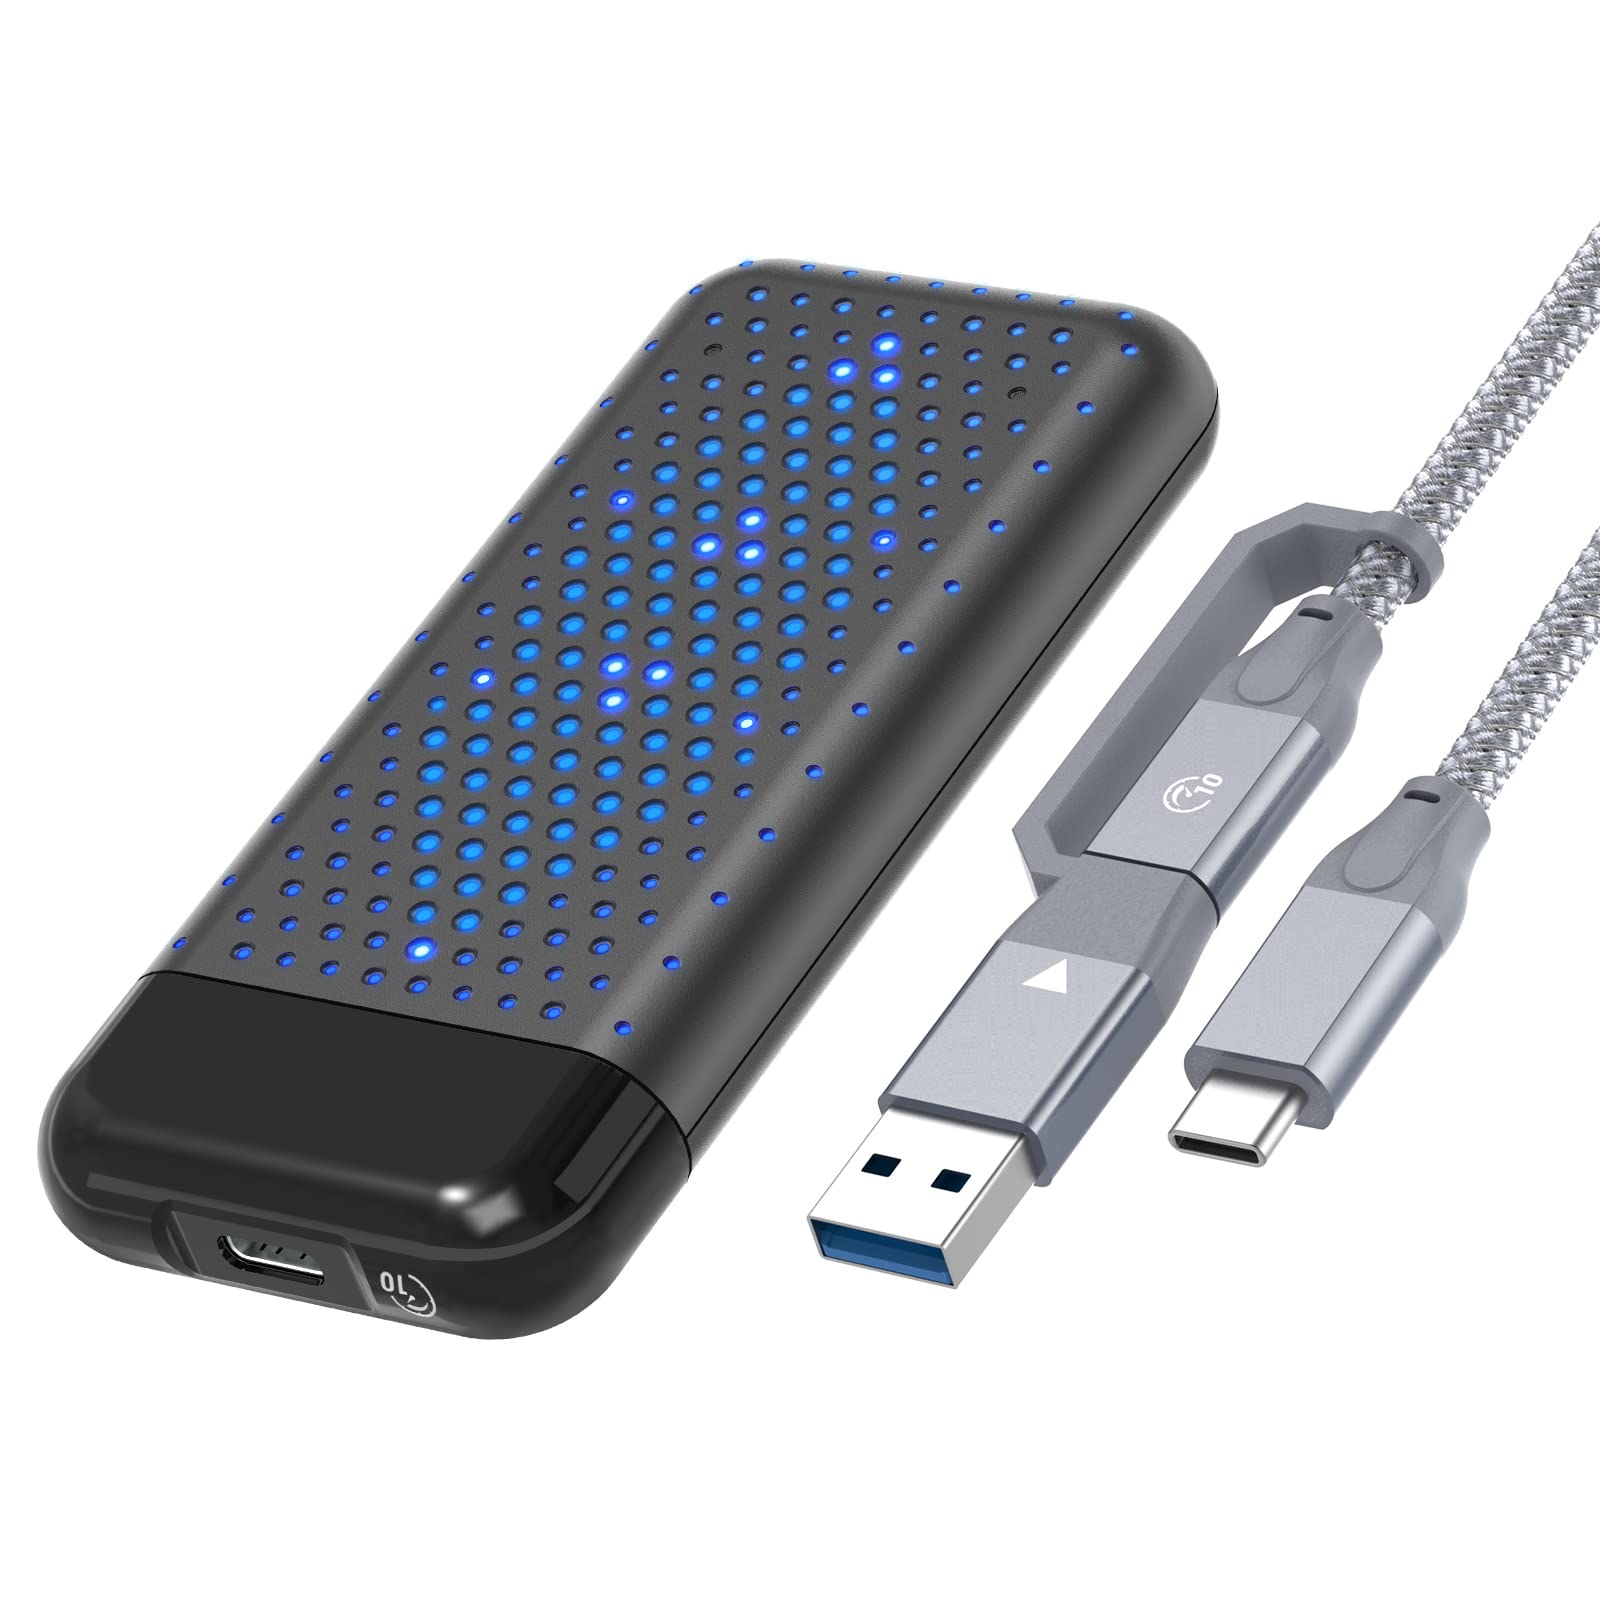 PHIXERO (RGB-Licht) Werkzeuglos NVMe M.2 Gehäuse mit USB 3.2 Gen 2 (10 Gbps) Übertragung, M.2 NVME SSD Gehäuse-Adapter, Untersützt UASP, Festplatten-Adapter fur M Key B+M Key 2242, 2260, 2280 SSD